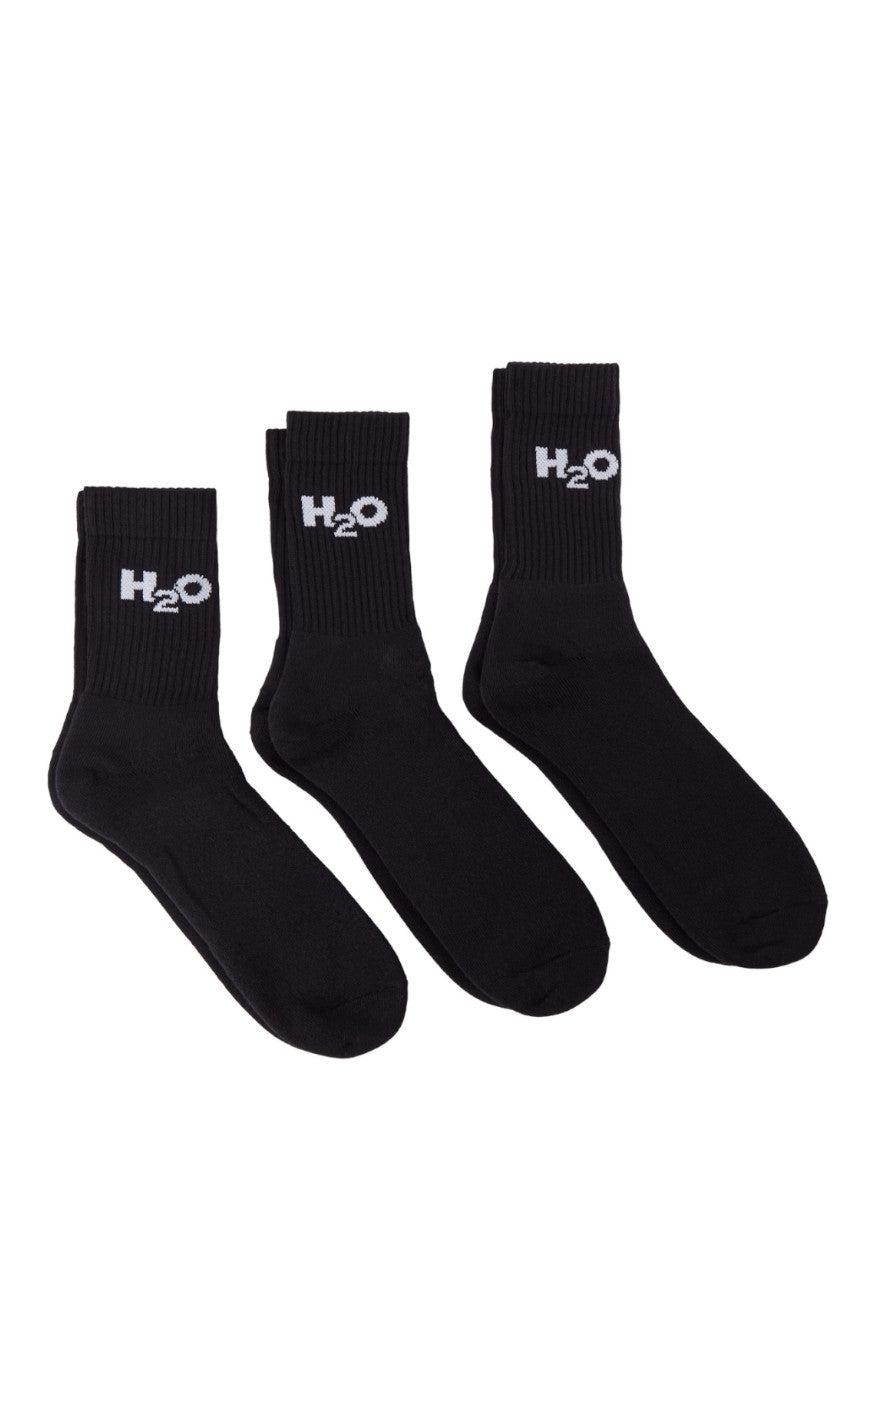 6: H2O Strømper - 3-Pack  - Black